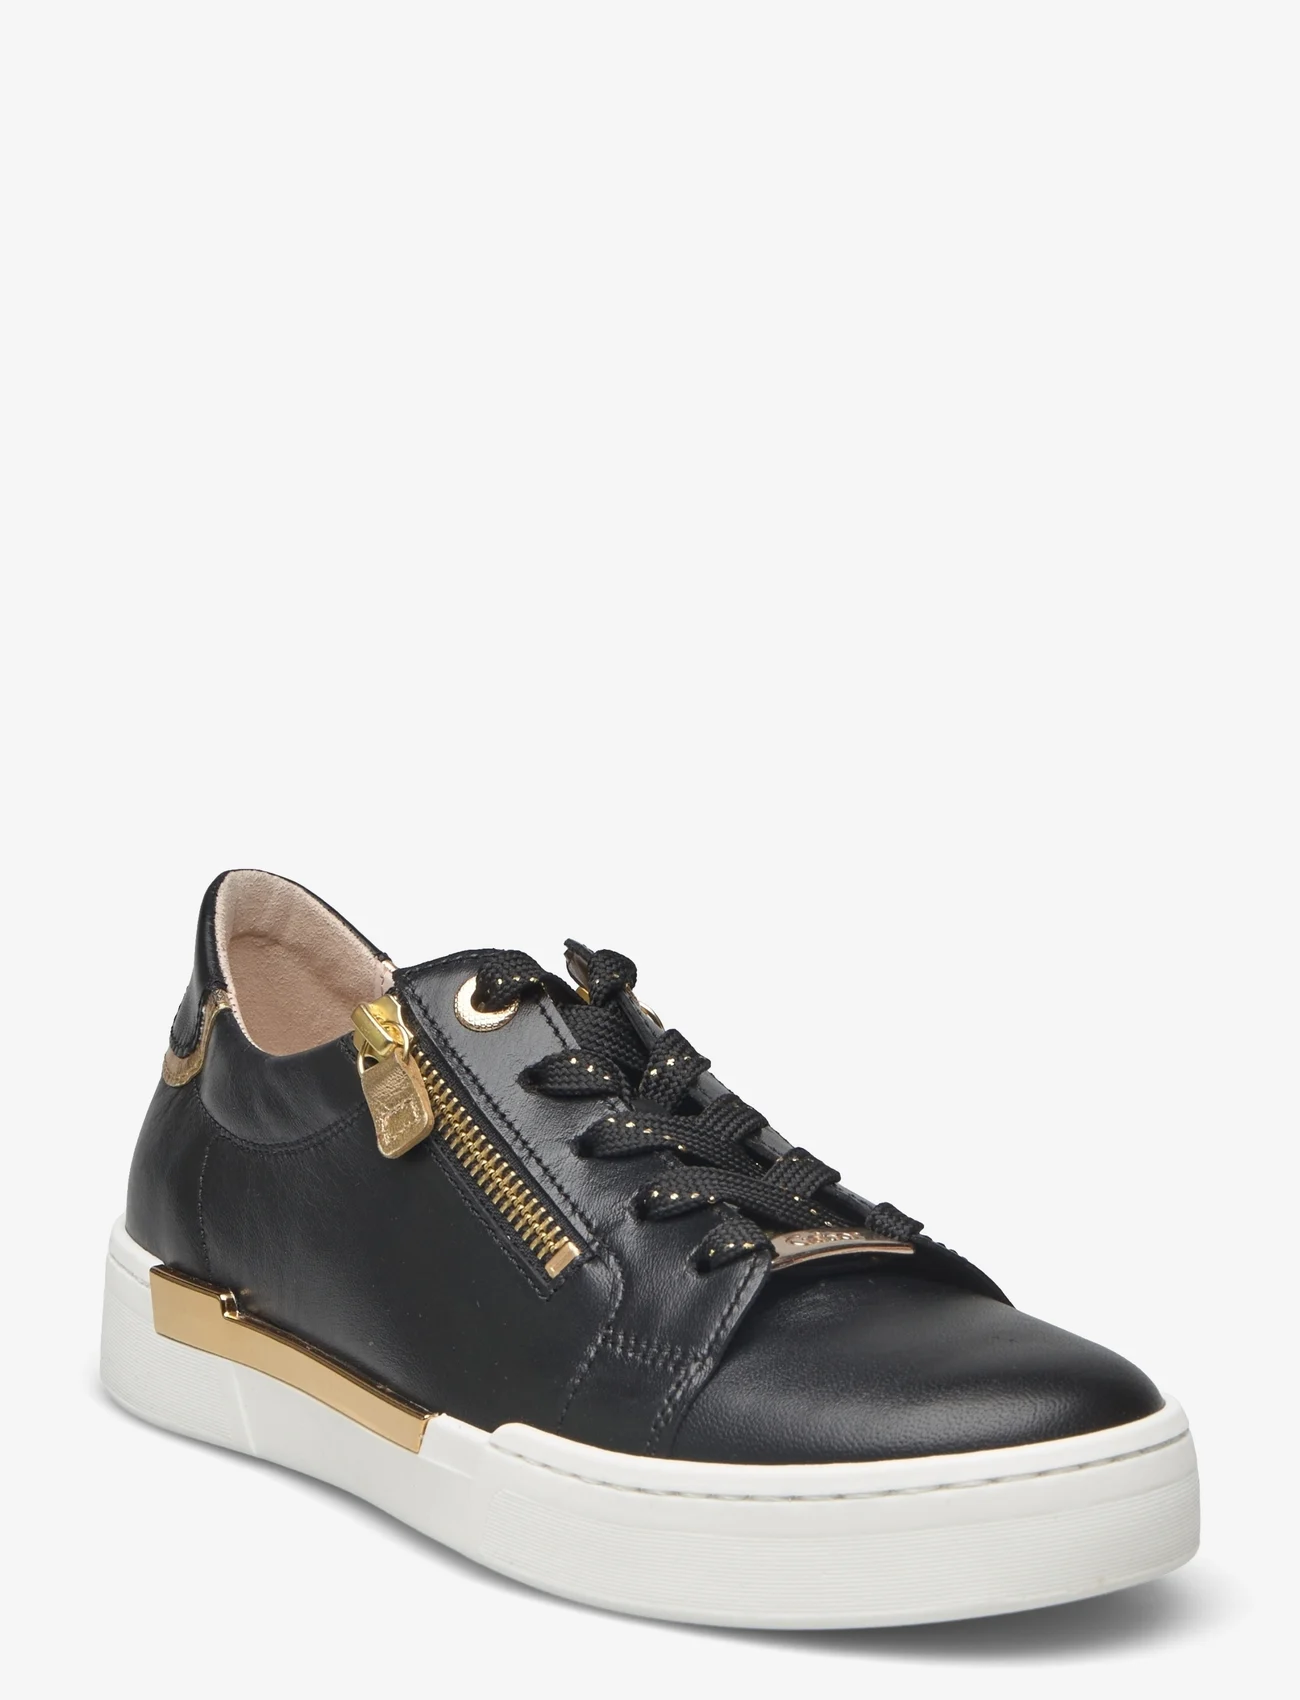 Gabor - Sneaker - lage sneakers - black - 0